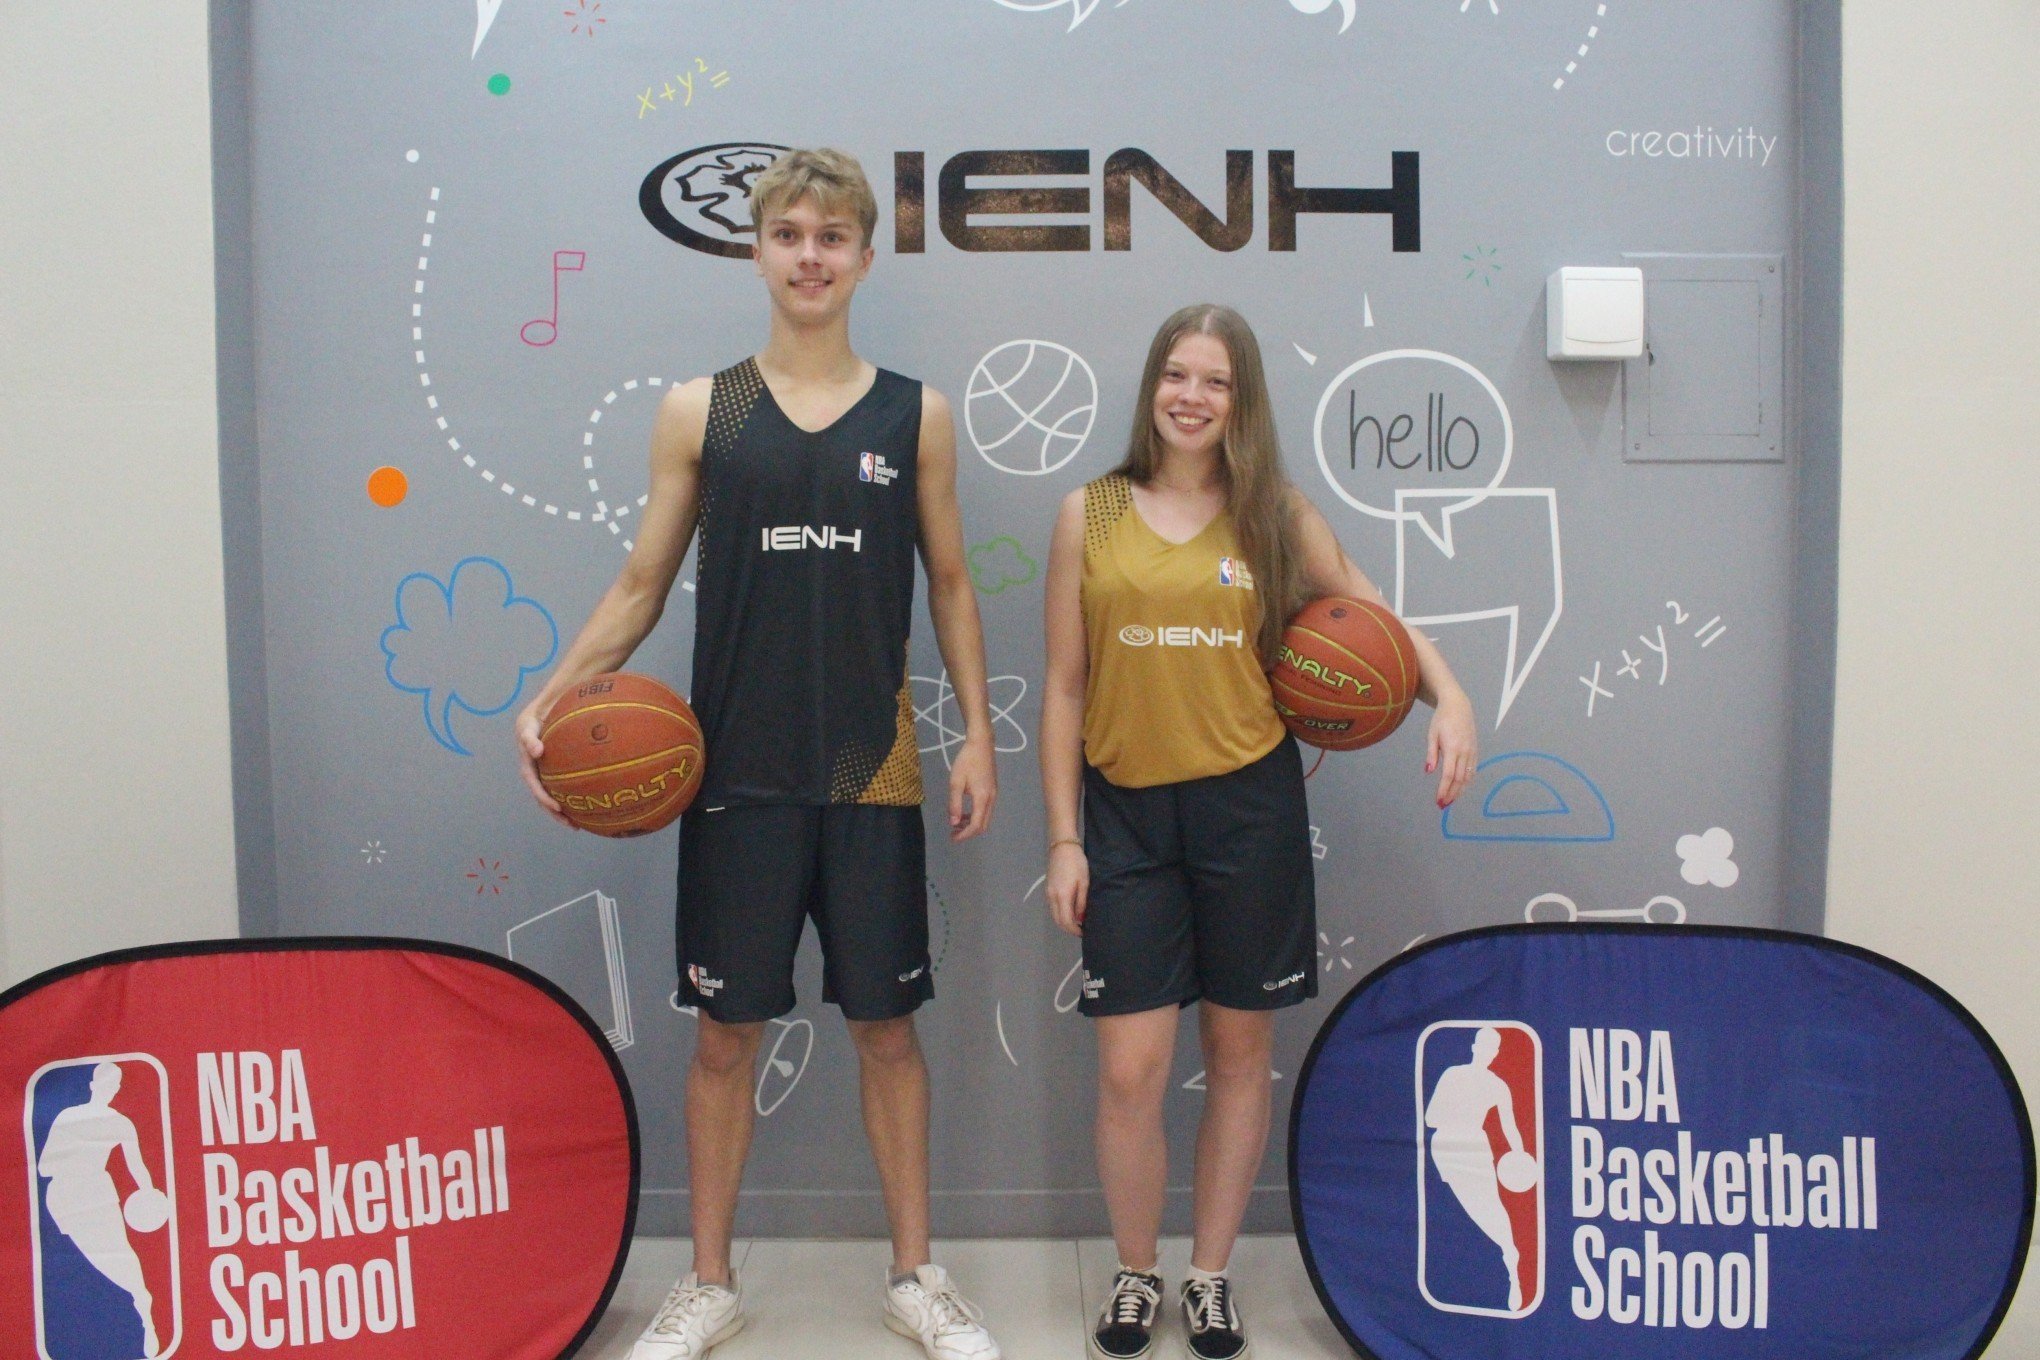 Programa NBA Basketball School será lançado na IENH neste fim de semana